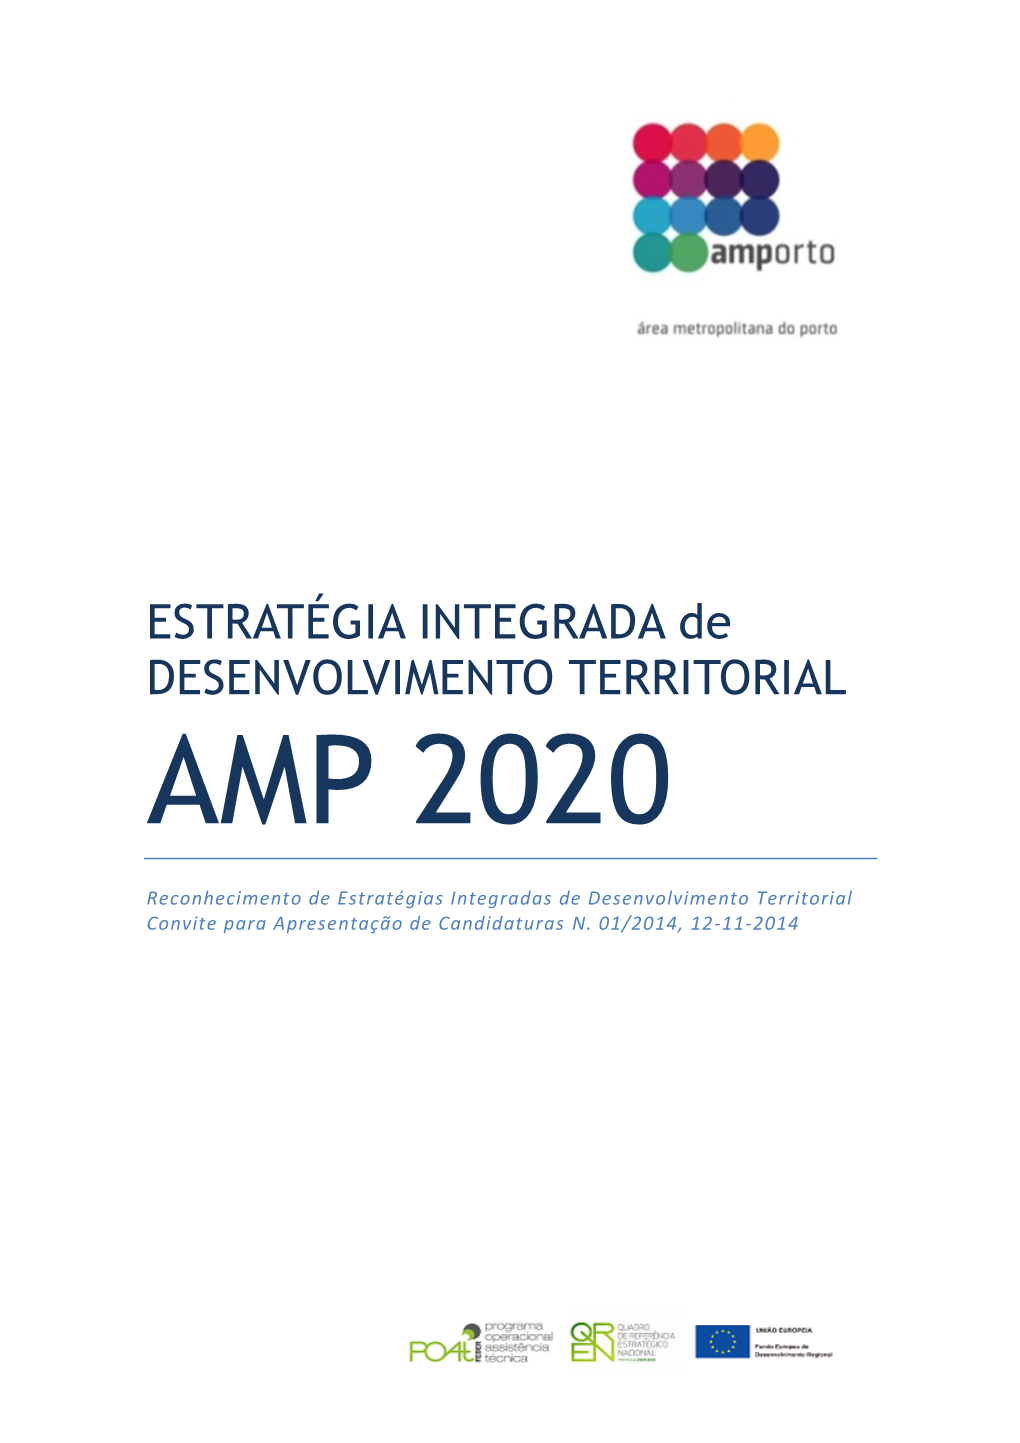 ESTRATÉGIA INTEGRADA De DESENVOLVIMENTO TERRITORIAL AMP 2020